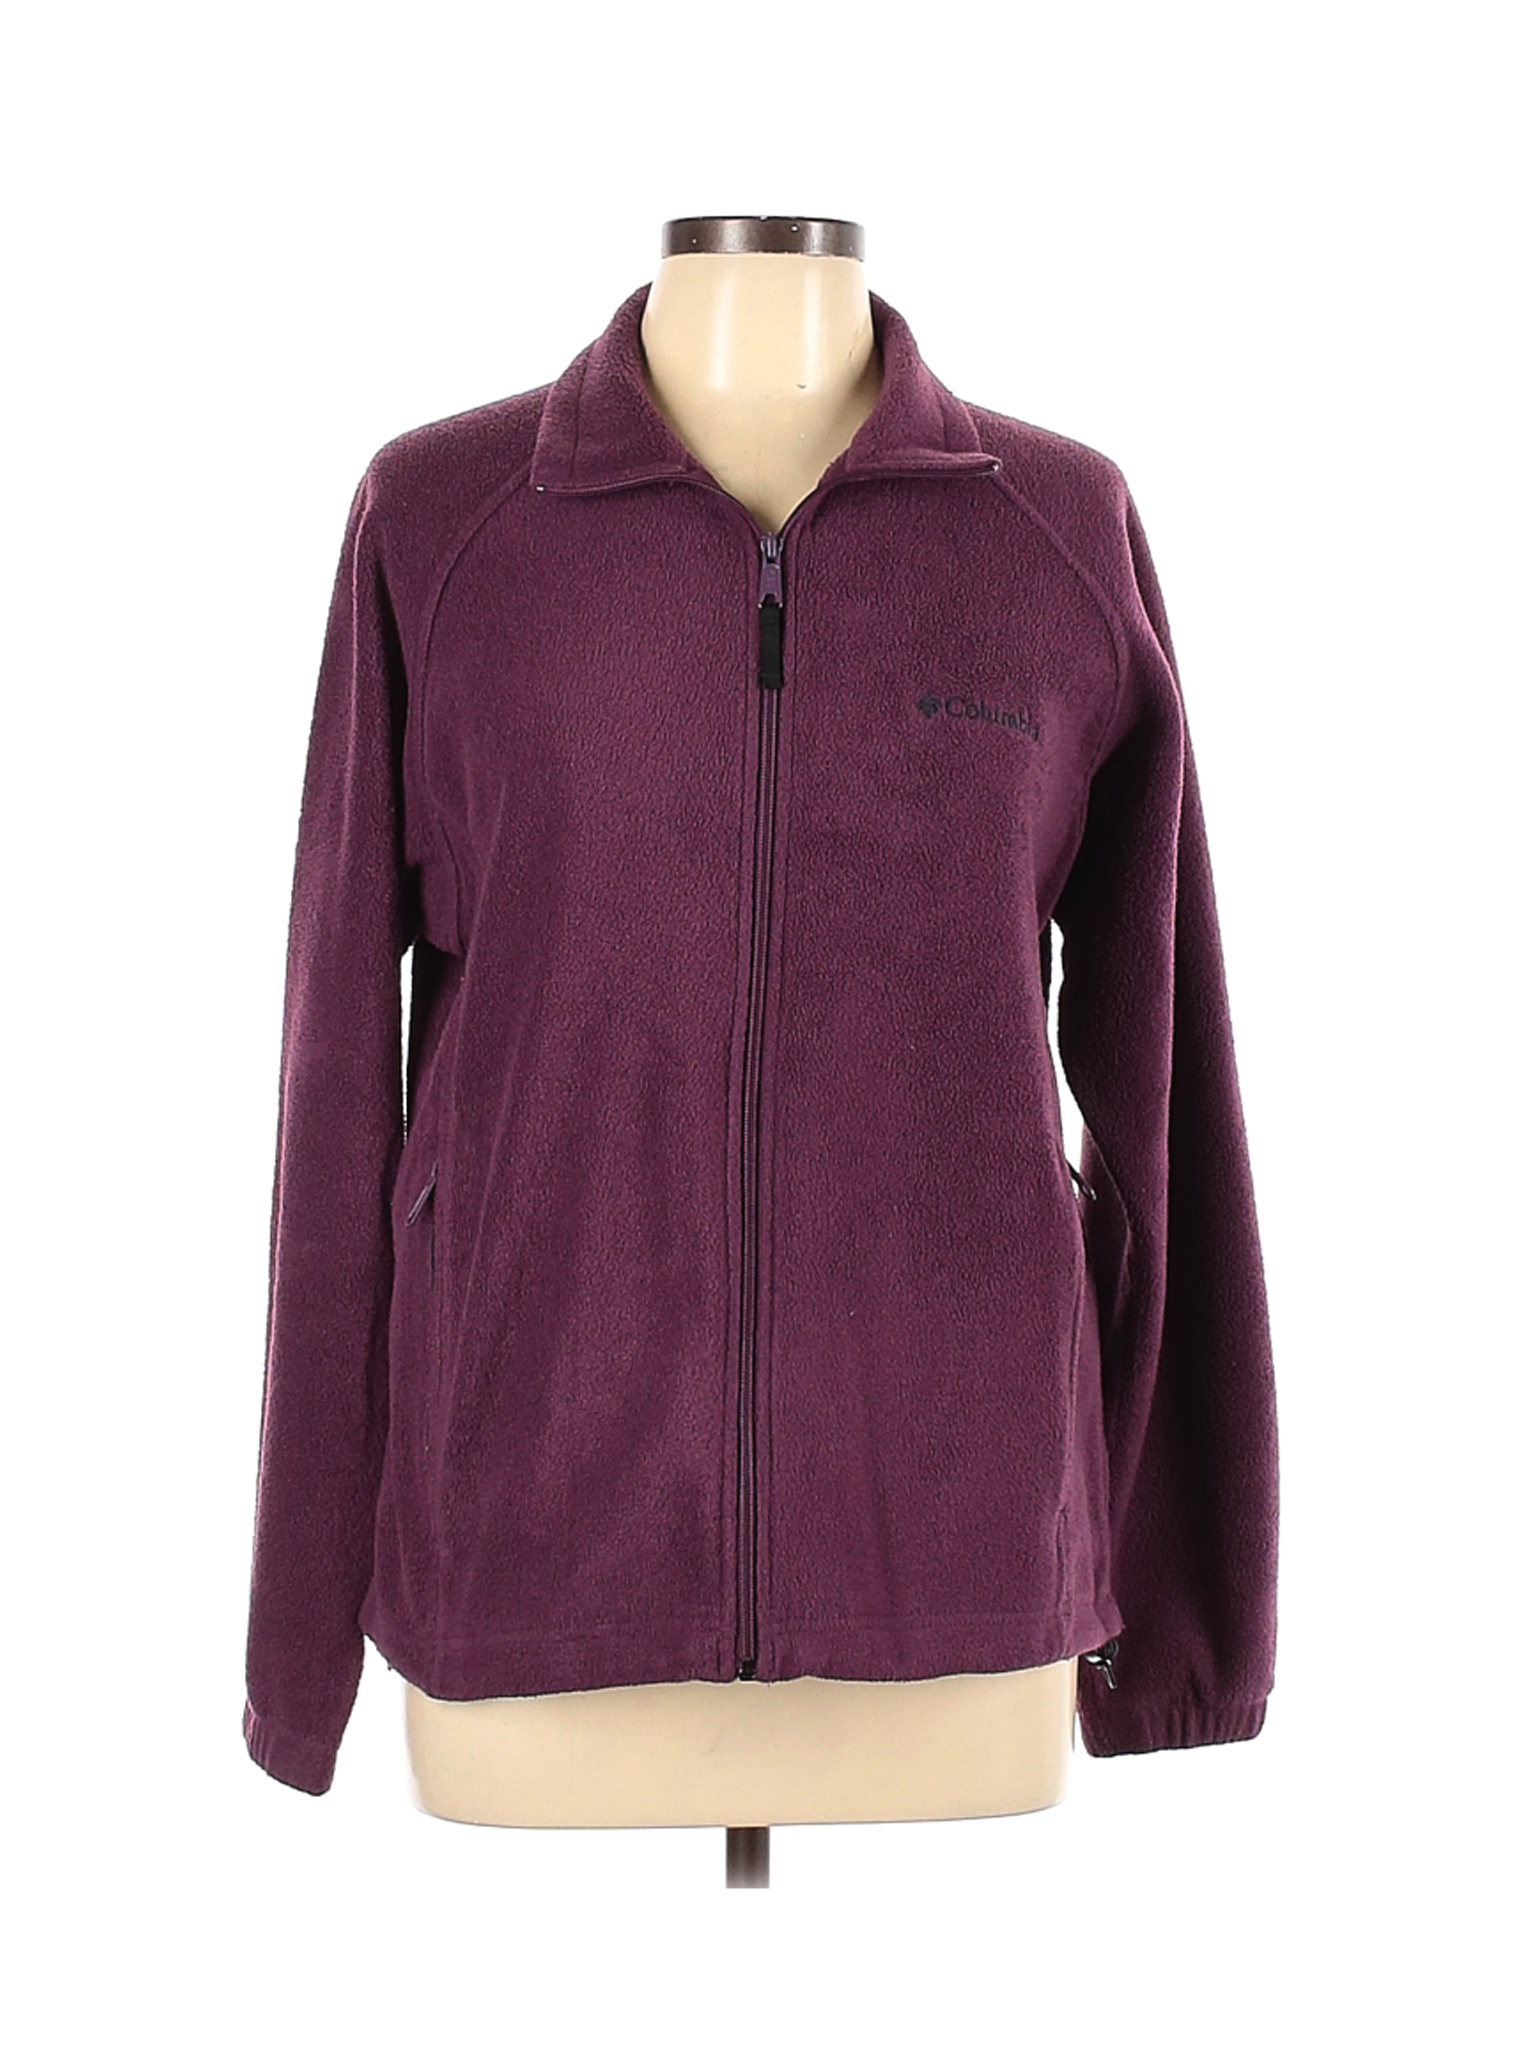 Columbia Women Purple Fleece L | eBay